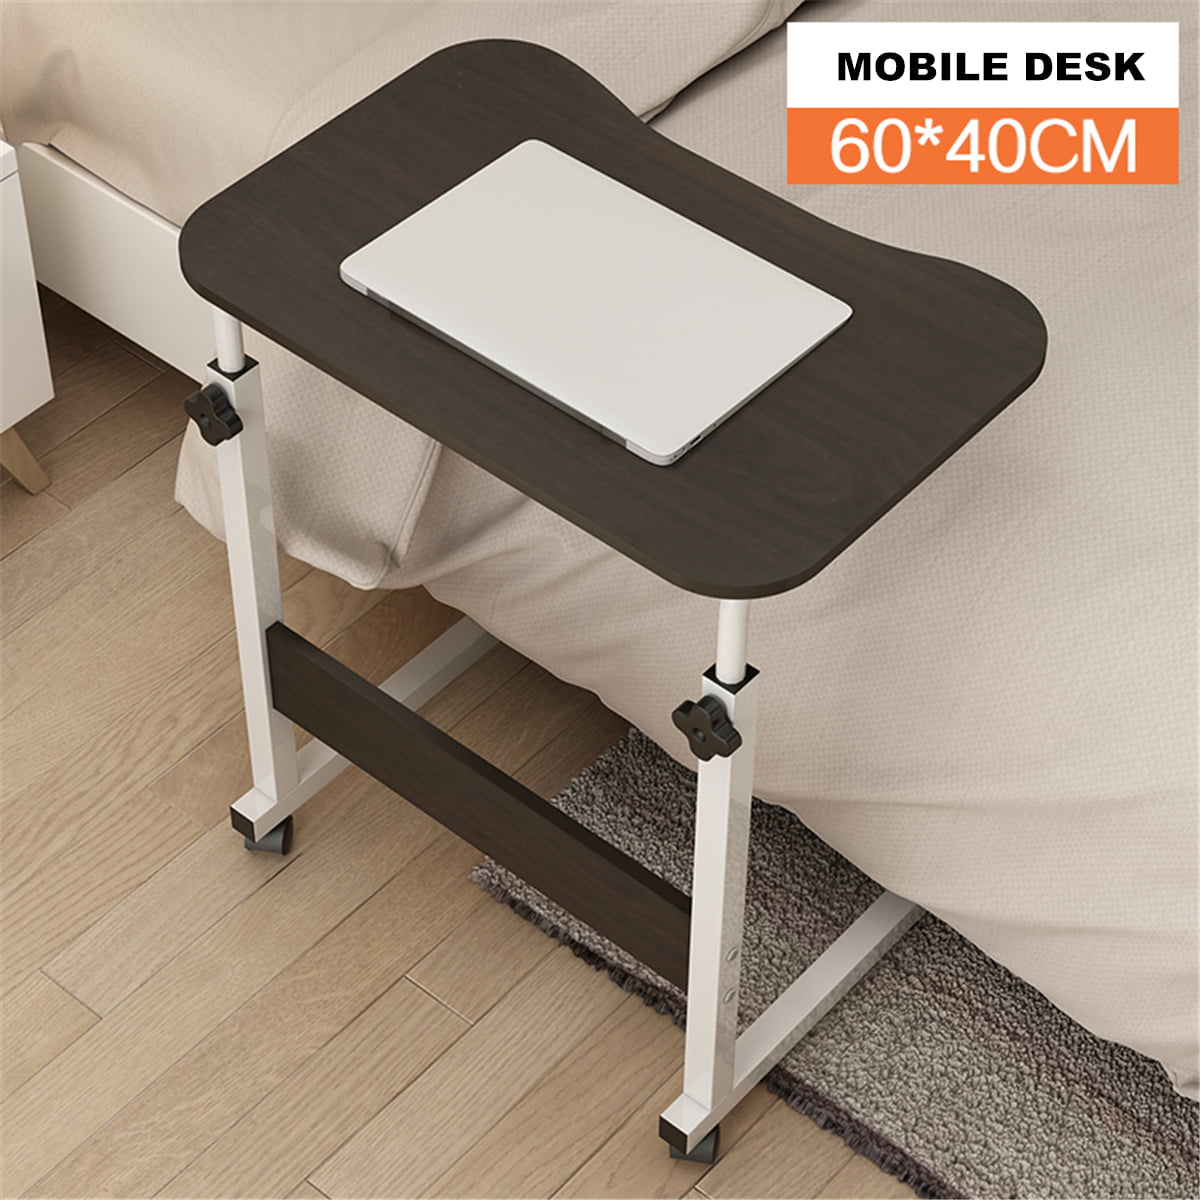 Adjustable Mobile Computer Desk Lifting Laptop Rolling Bedside Home Office Table